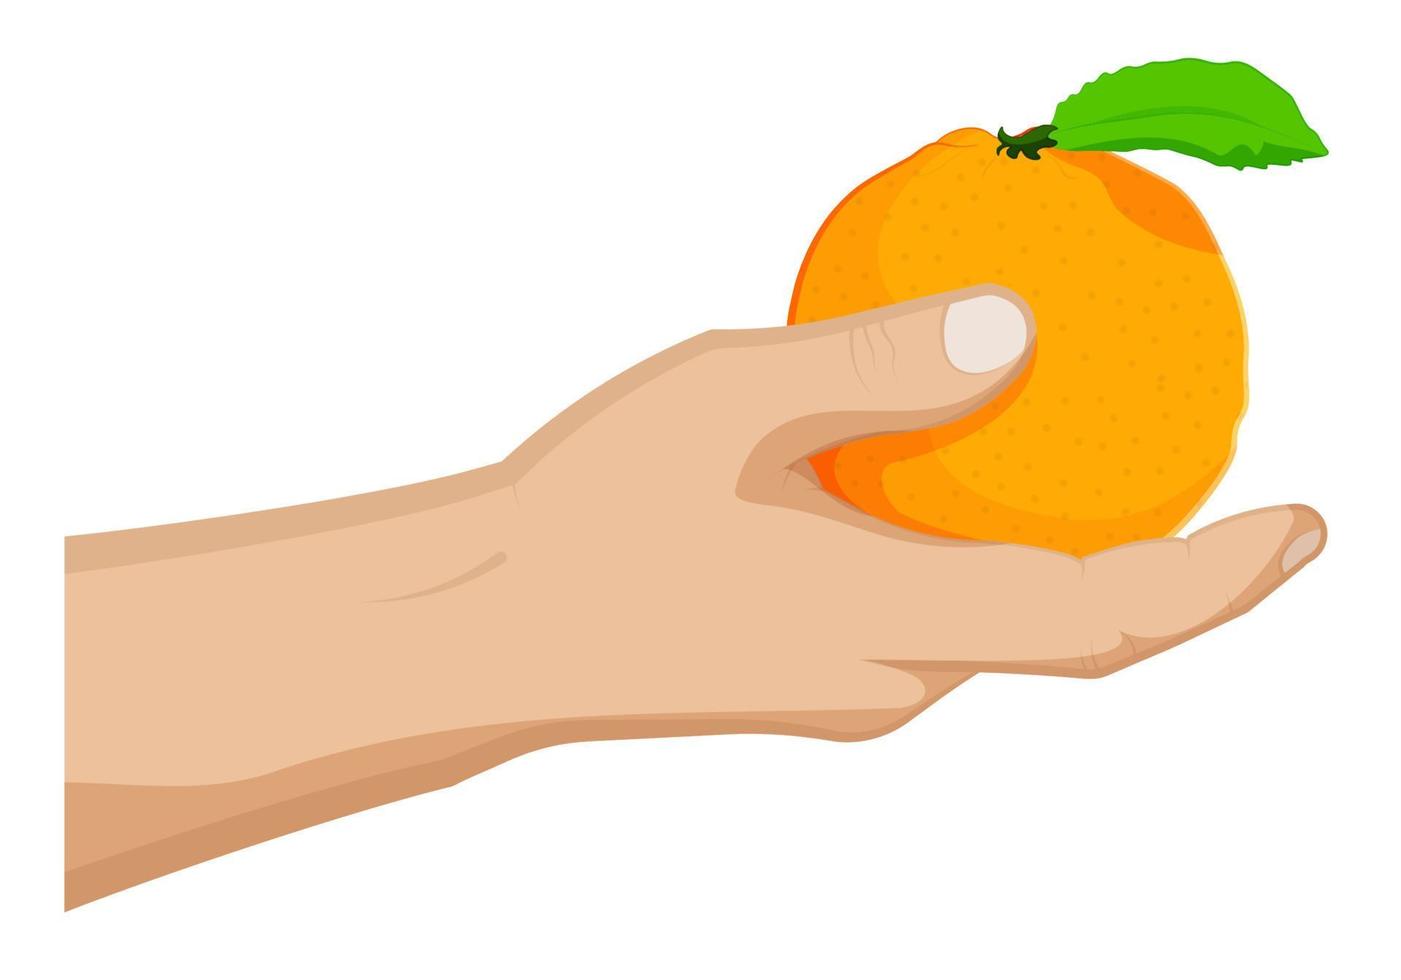 jugosa naranja madura con hoja verde en la mano de un hombre. frutas tropicales de verano. vector de dibujos animados sobre fondo blanco